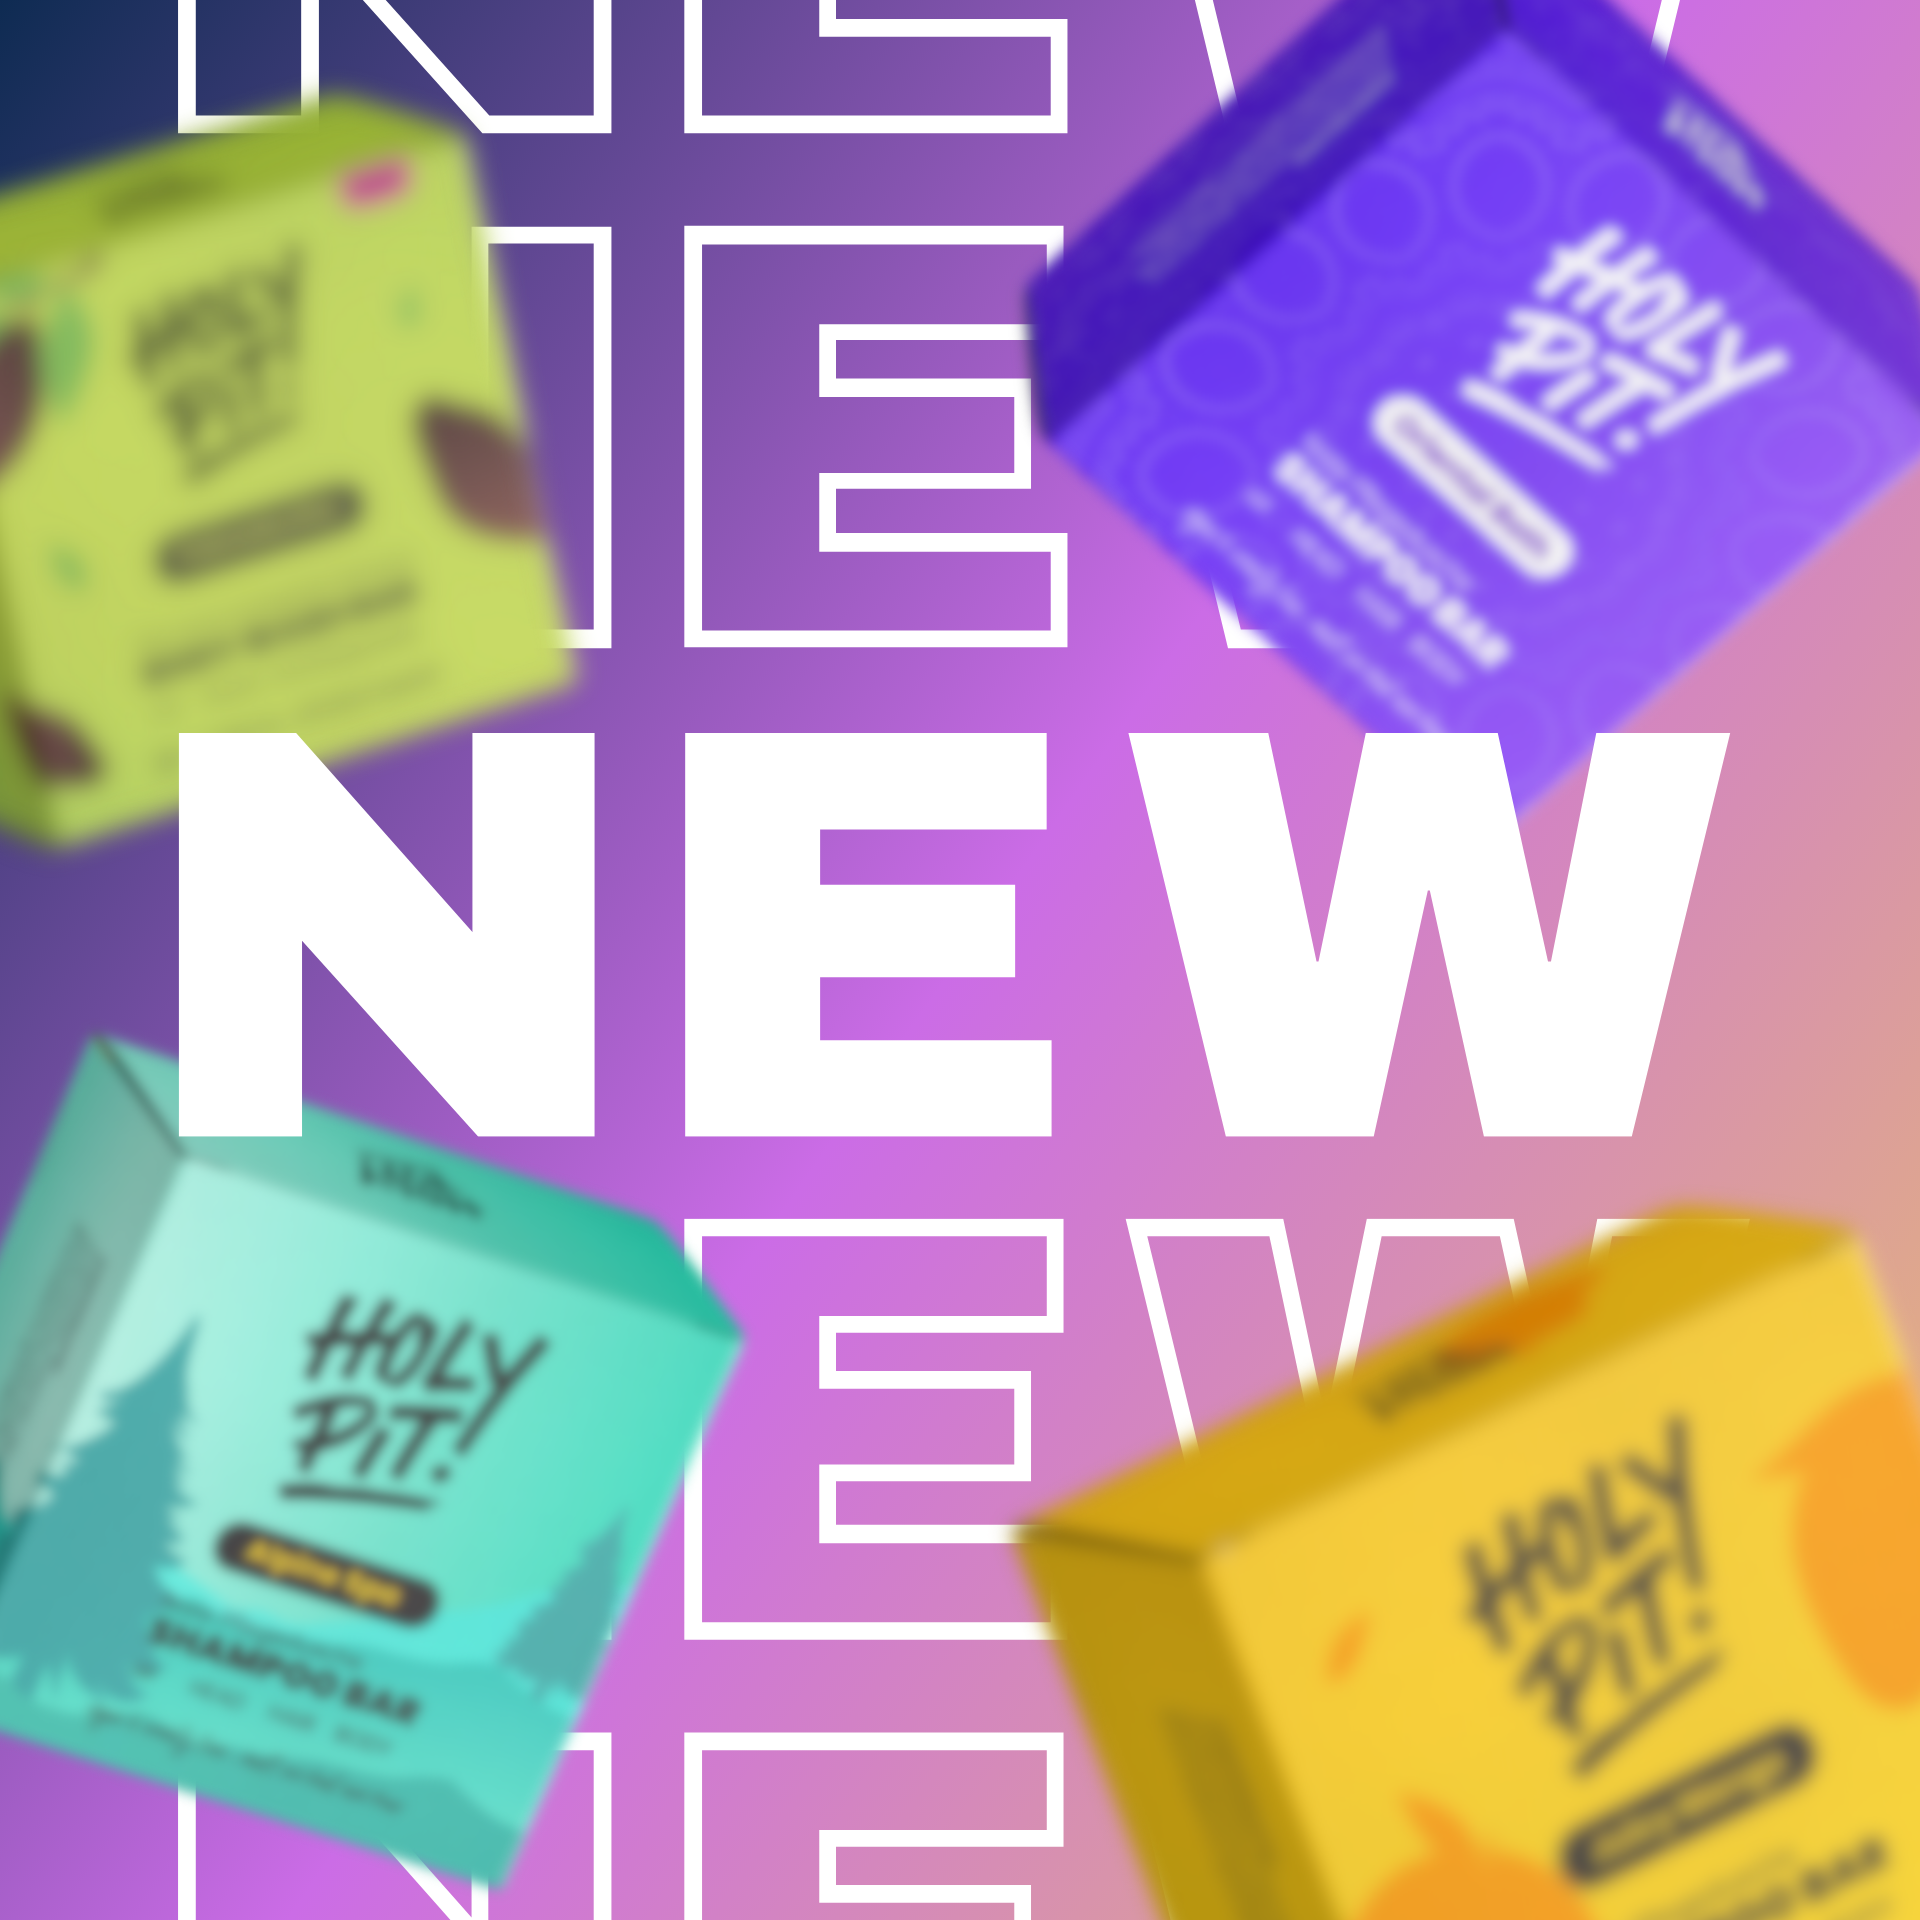 Neue HOLY PIT Produkte mit Aufschrift "NEW"